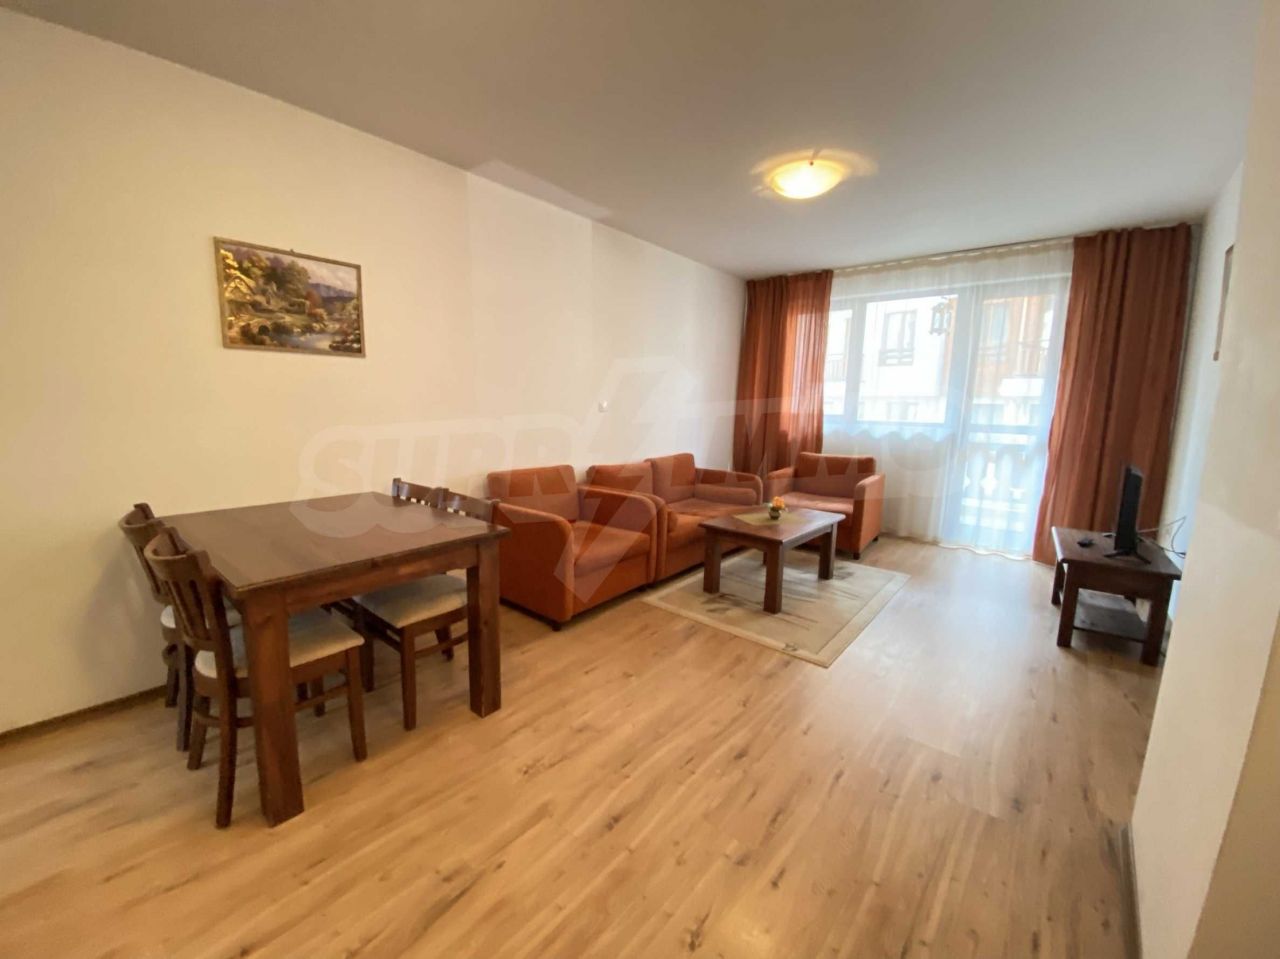 Apartment in Bansko, Bulgarien, 62.96 m2 - Foto 1